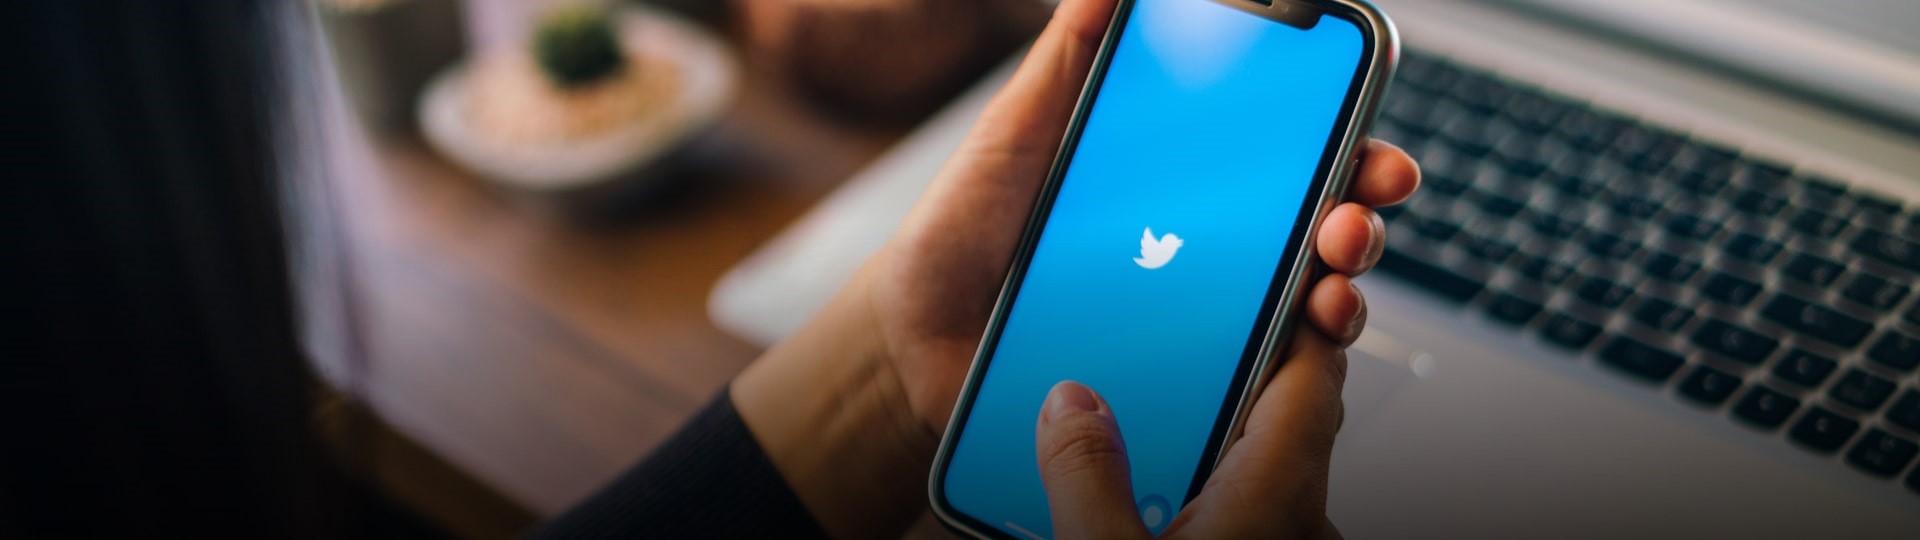 Twitter zavede funkci spropitného celosvětově a také v bitcoinech